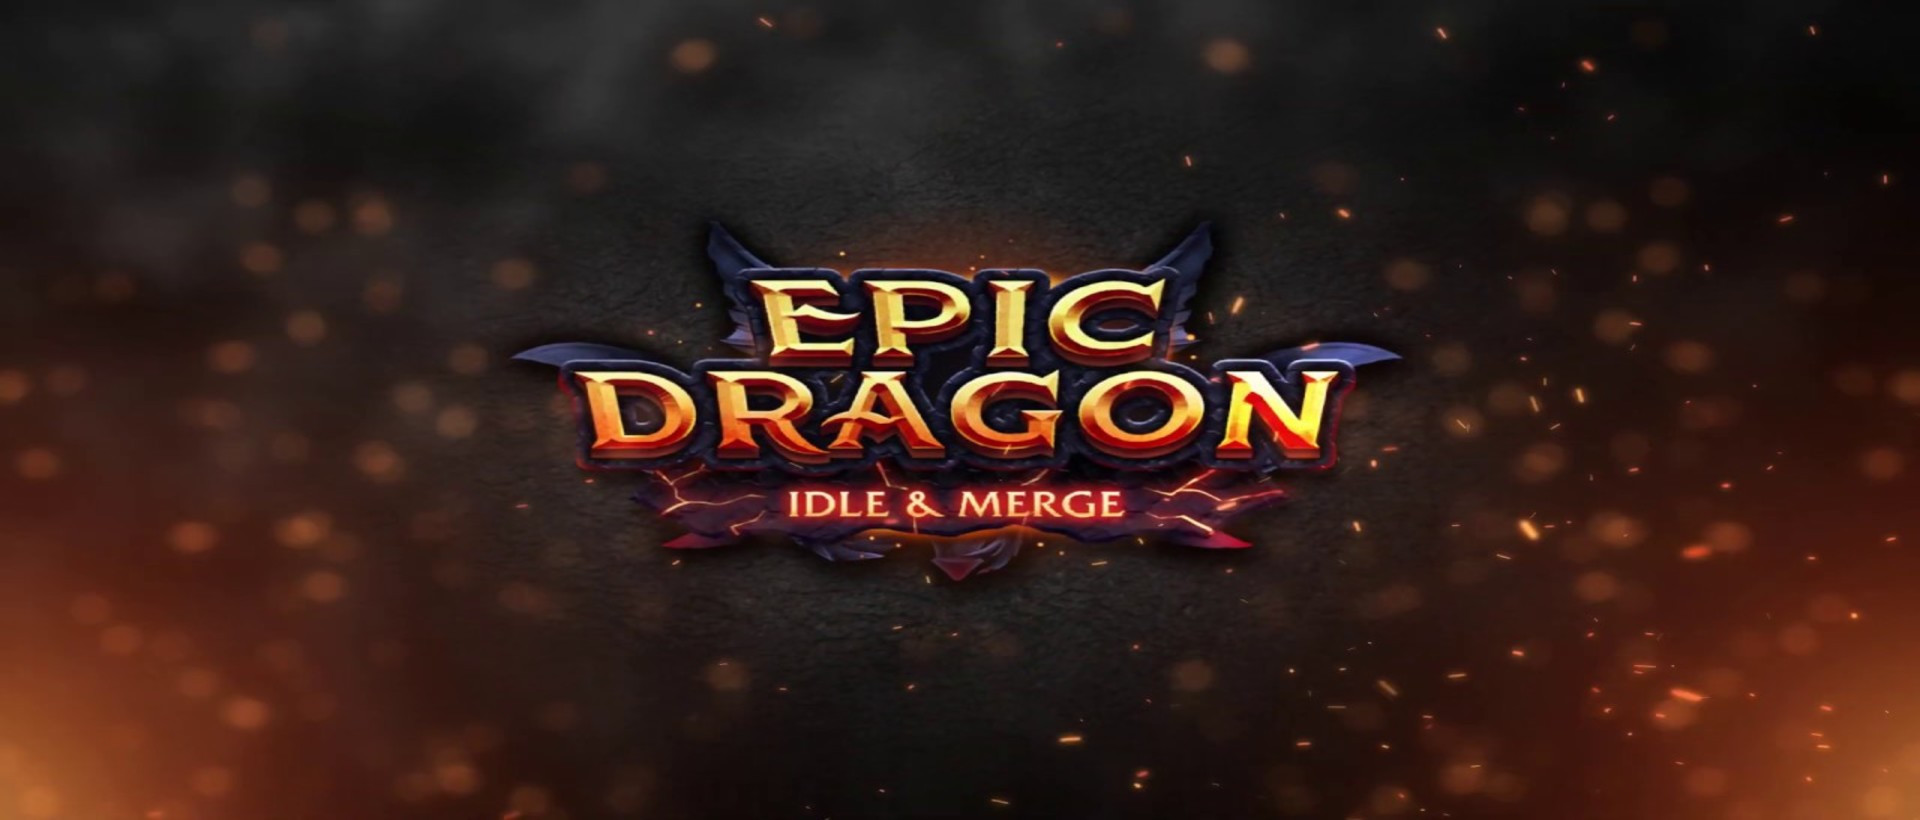 Chơi Dragon Epic - Bắn rồng (Ban rong) & Hợp nhất rồng trên máy tính/PC cùng giả lập NoxPlayer